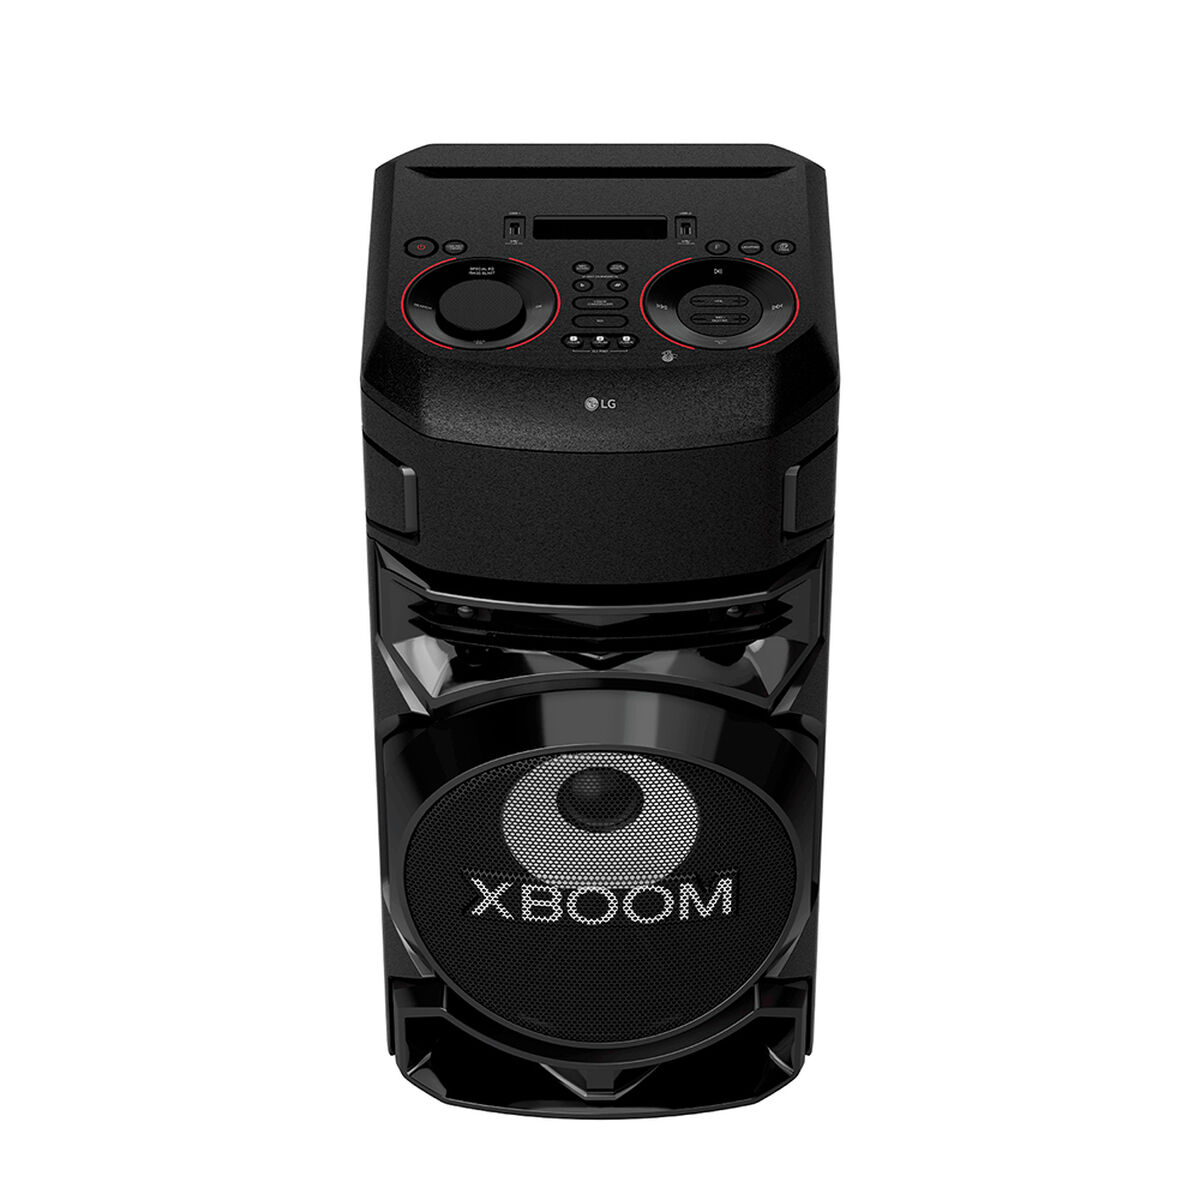 Minicomponente LG XBOOM RN5 500W